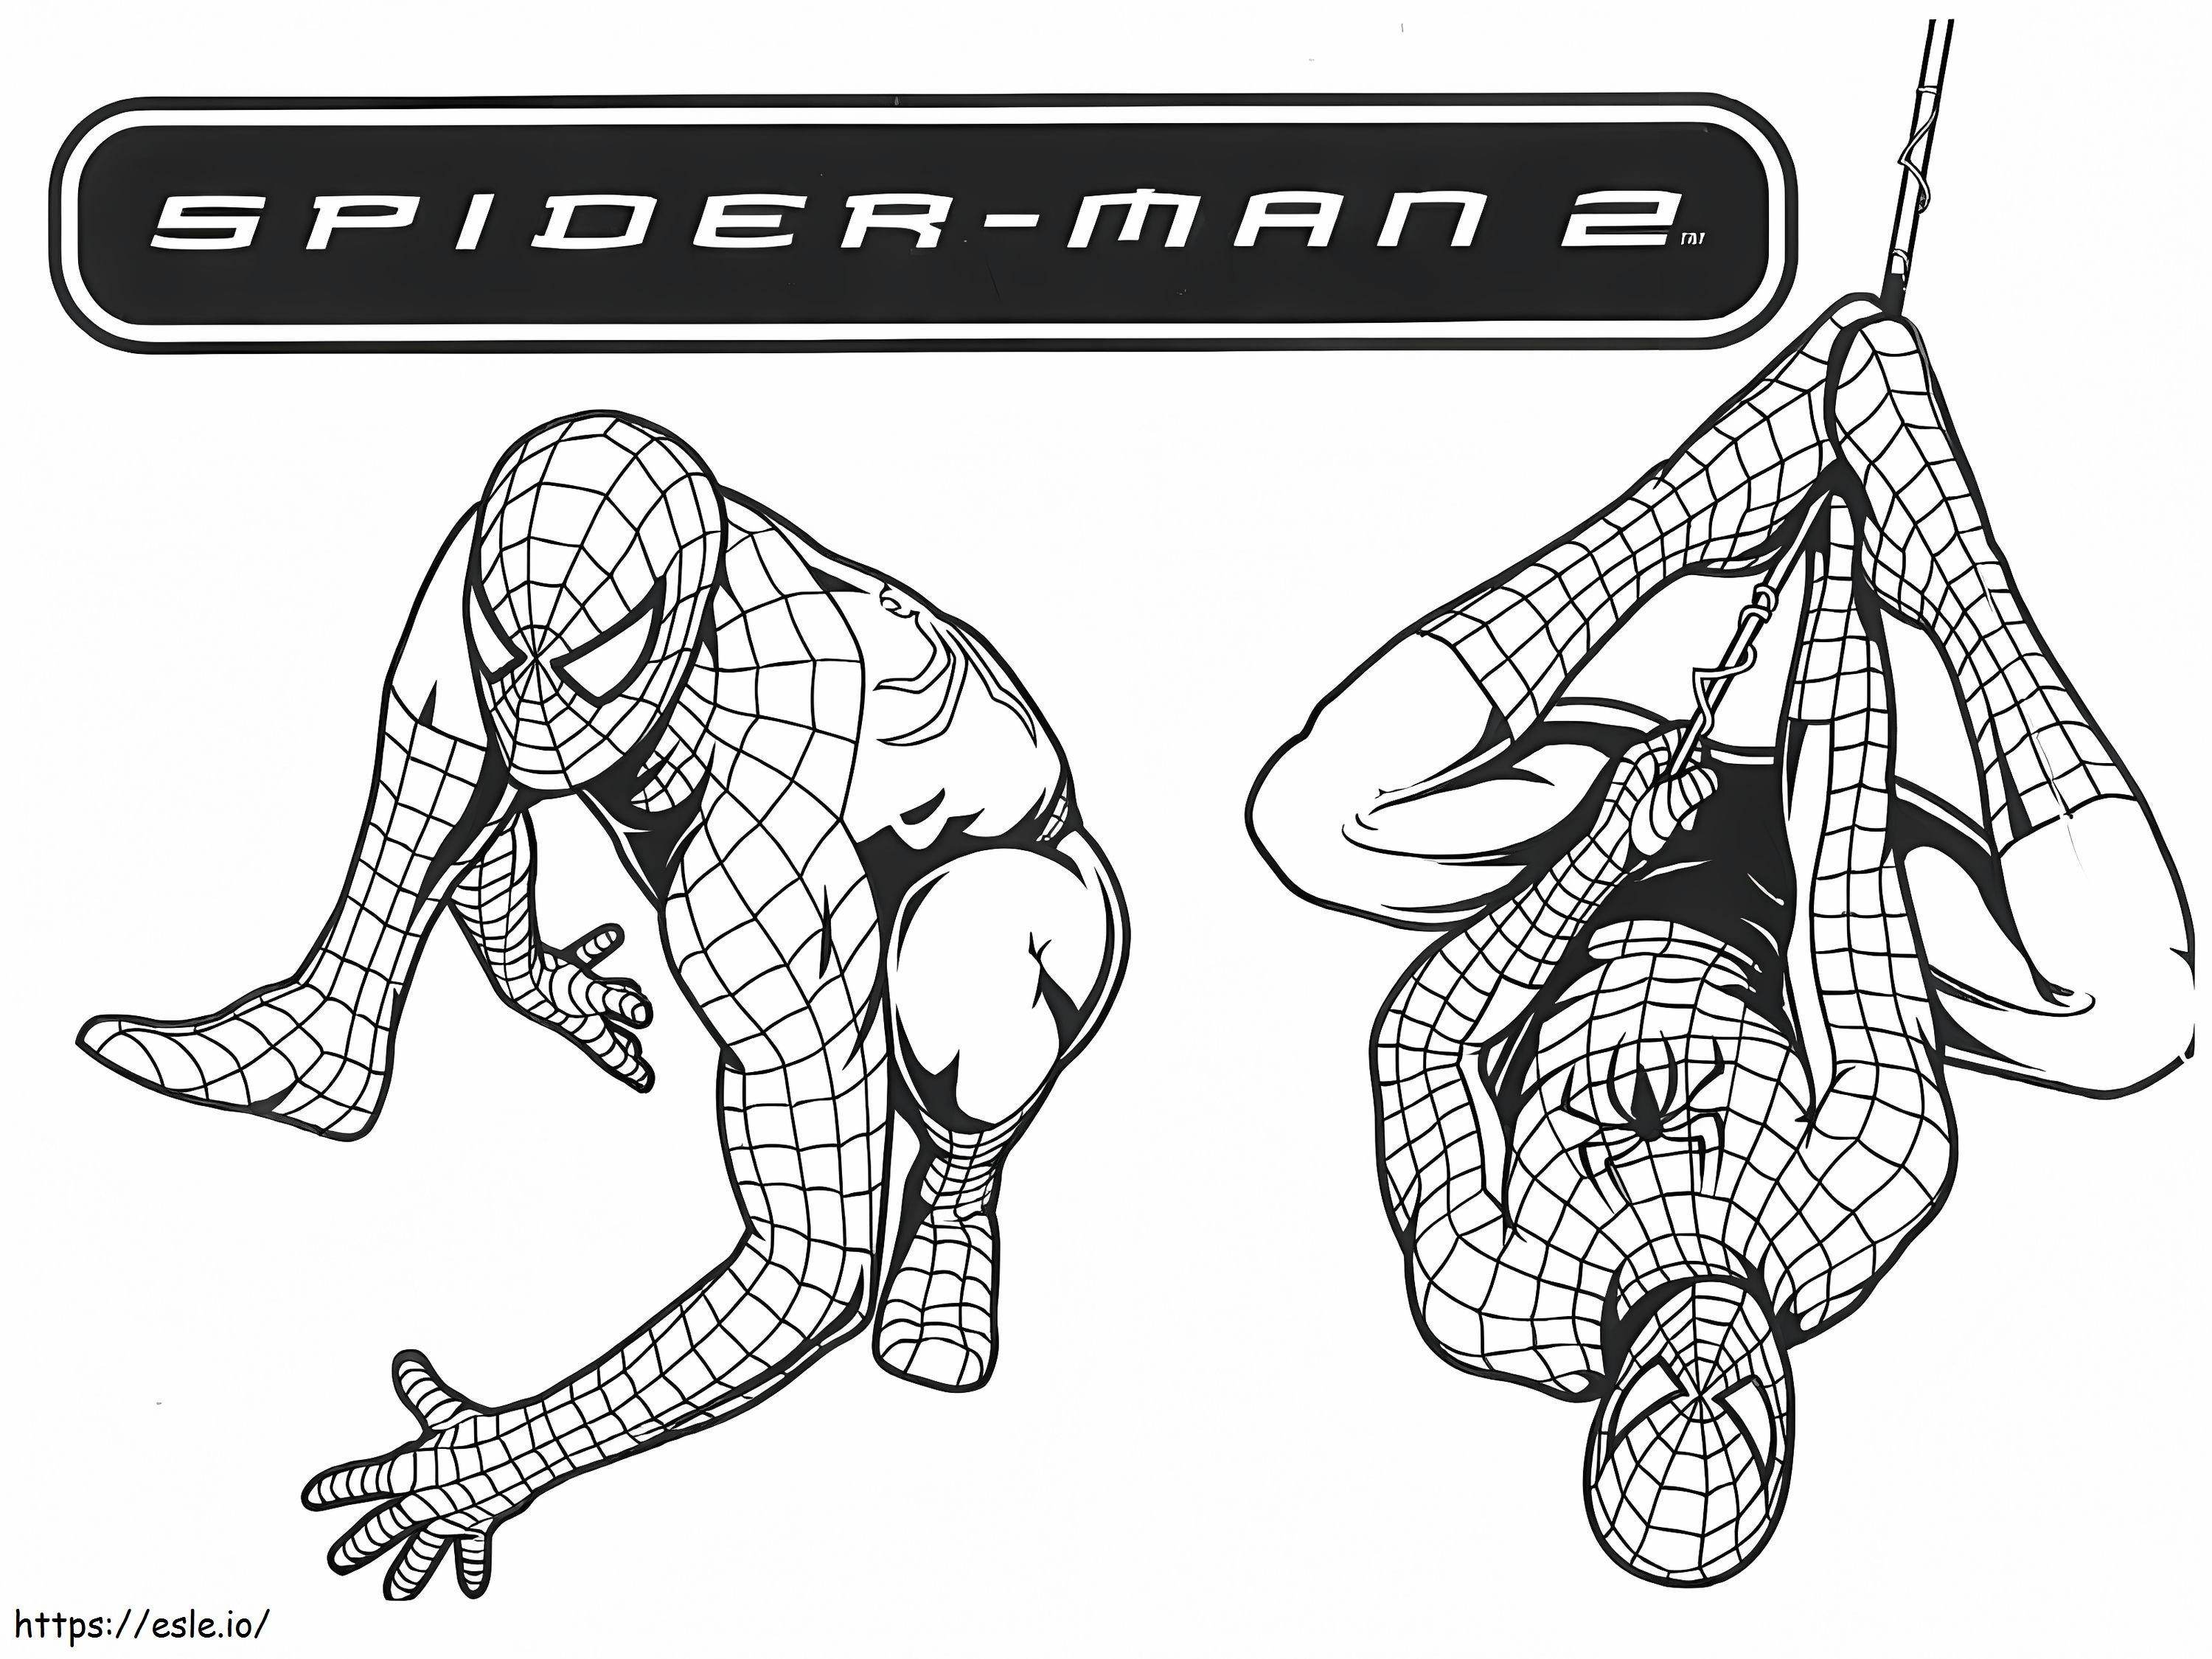 Spiderman 3 kolorowanka